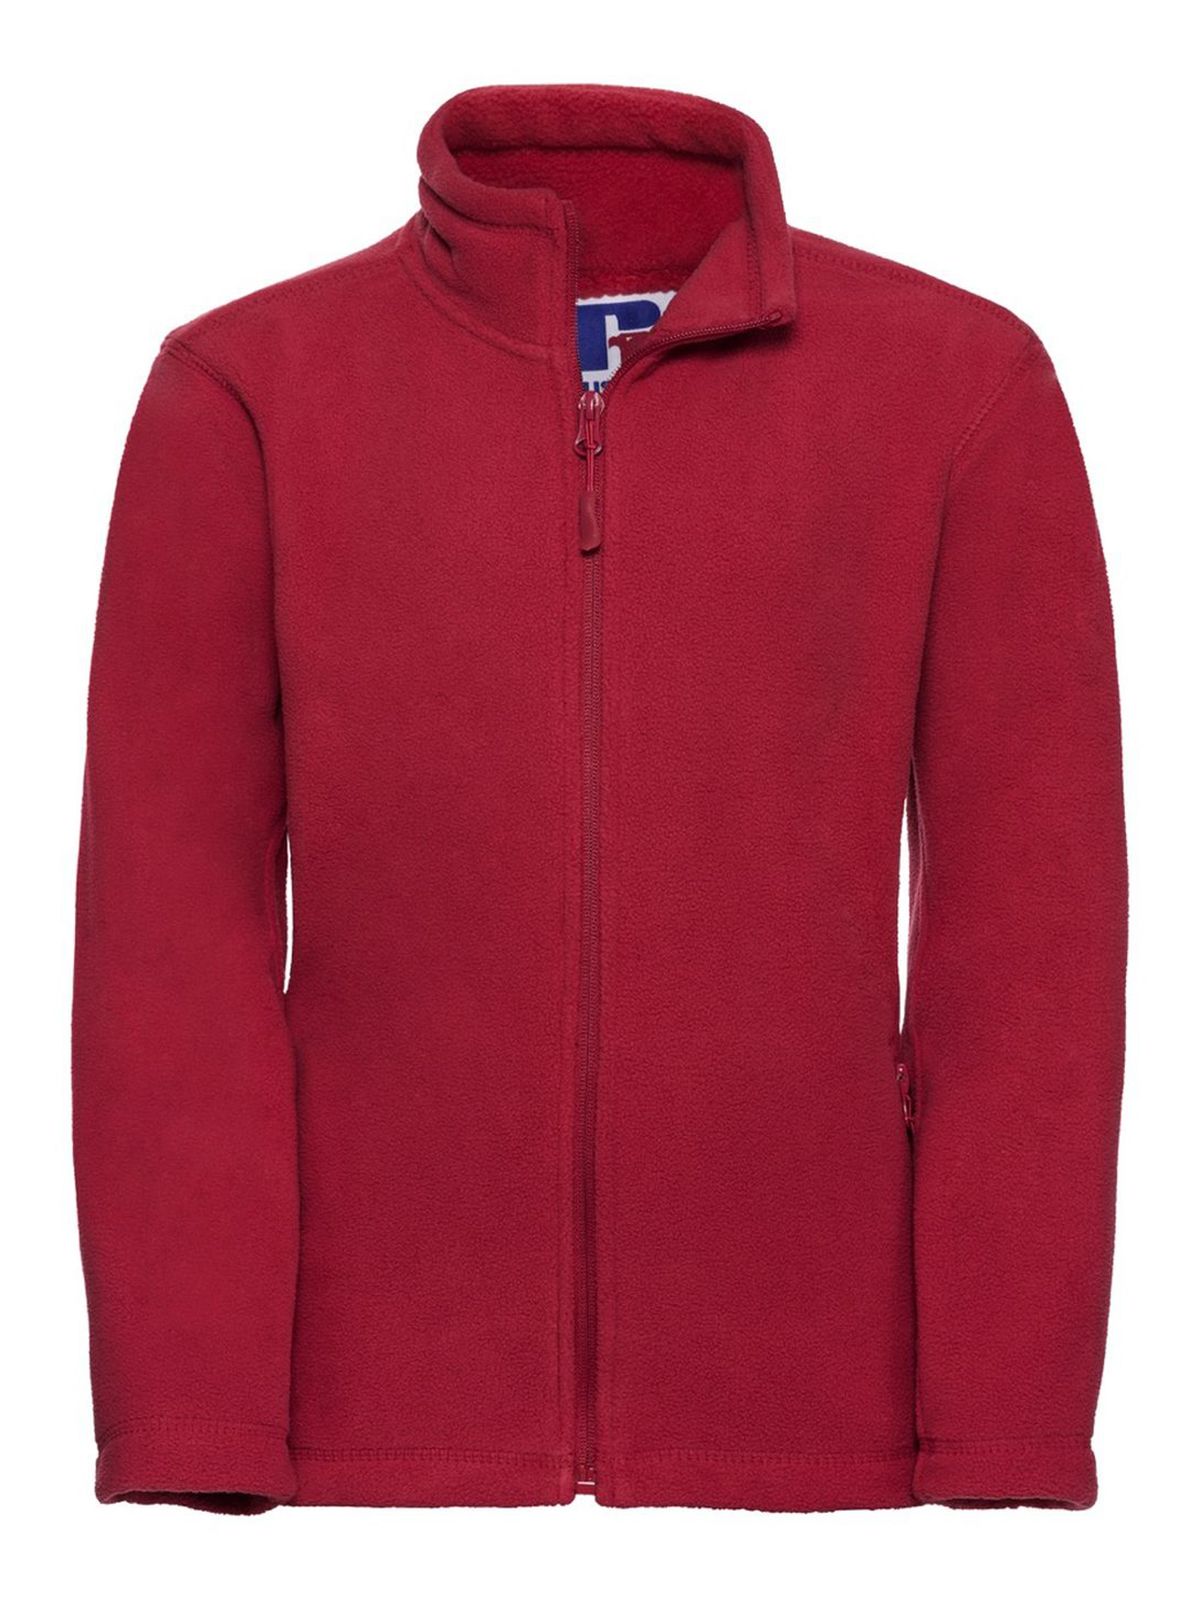 childrens-full-zip-outdoor-fleece-classic-red.webp